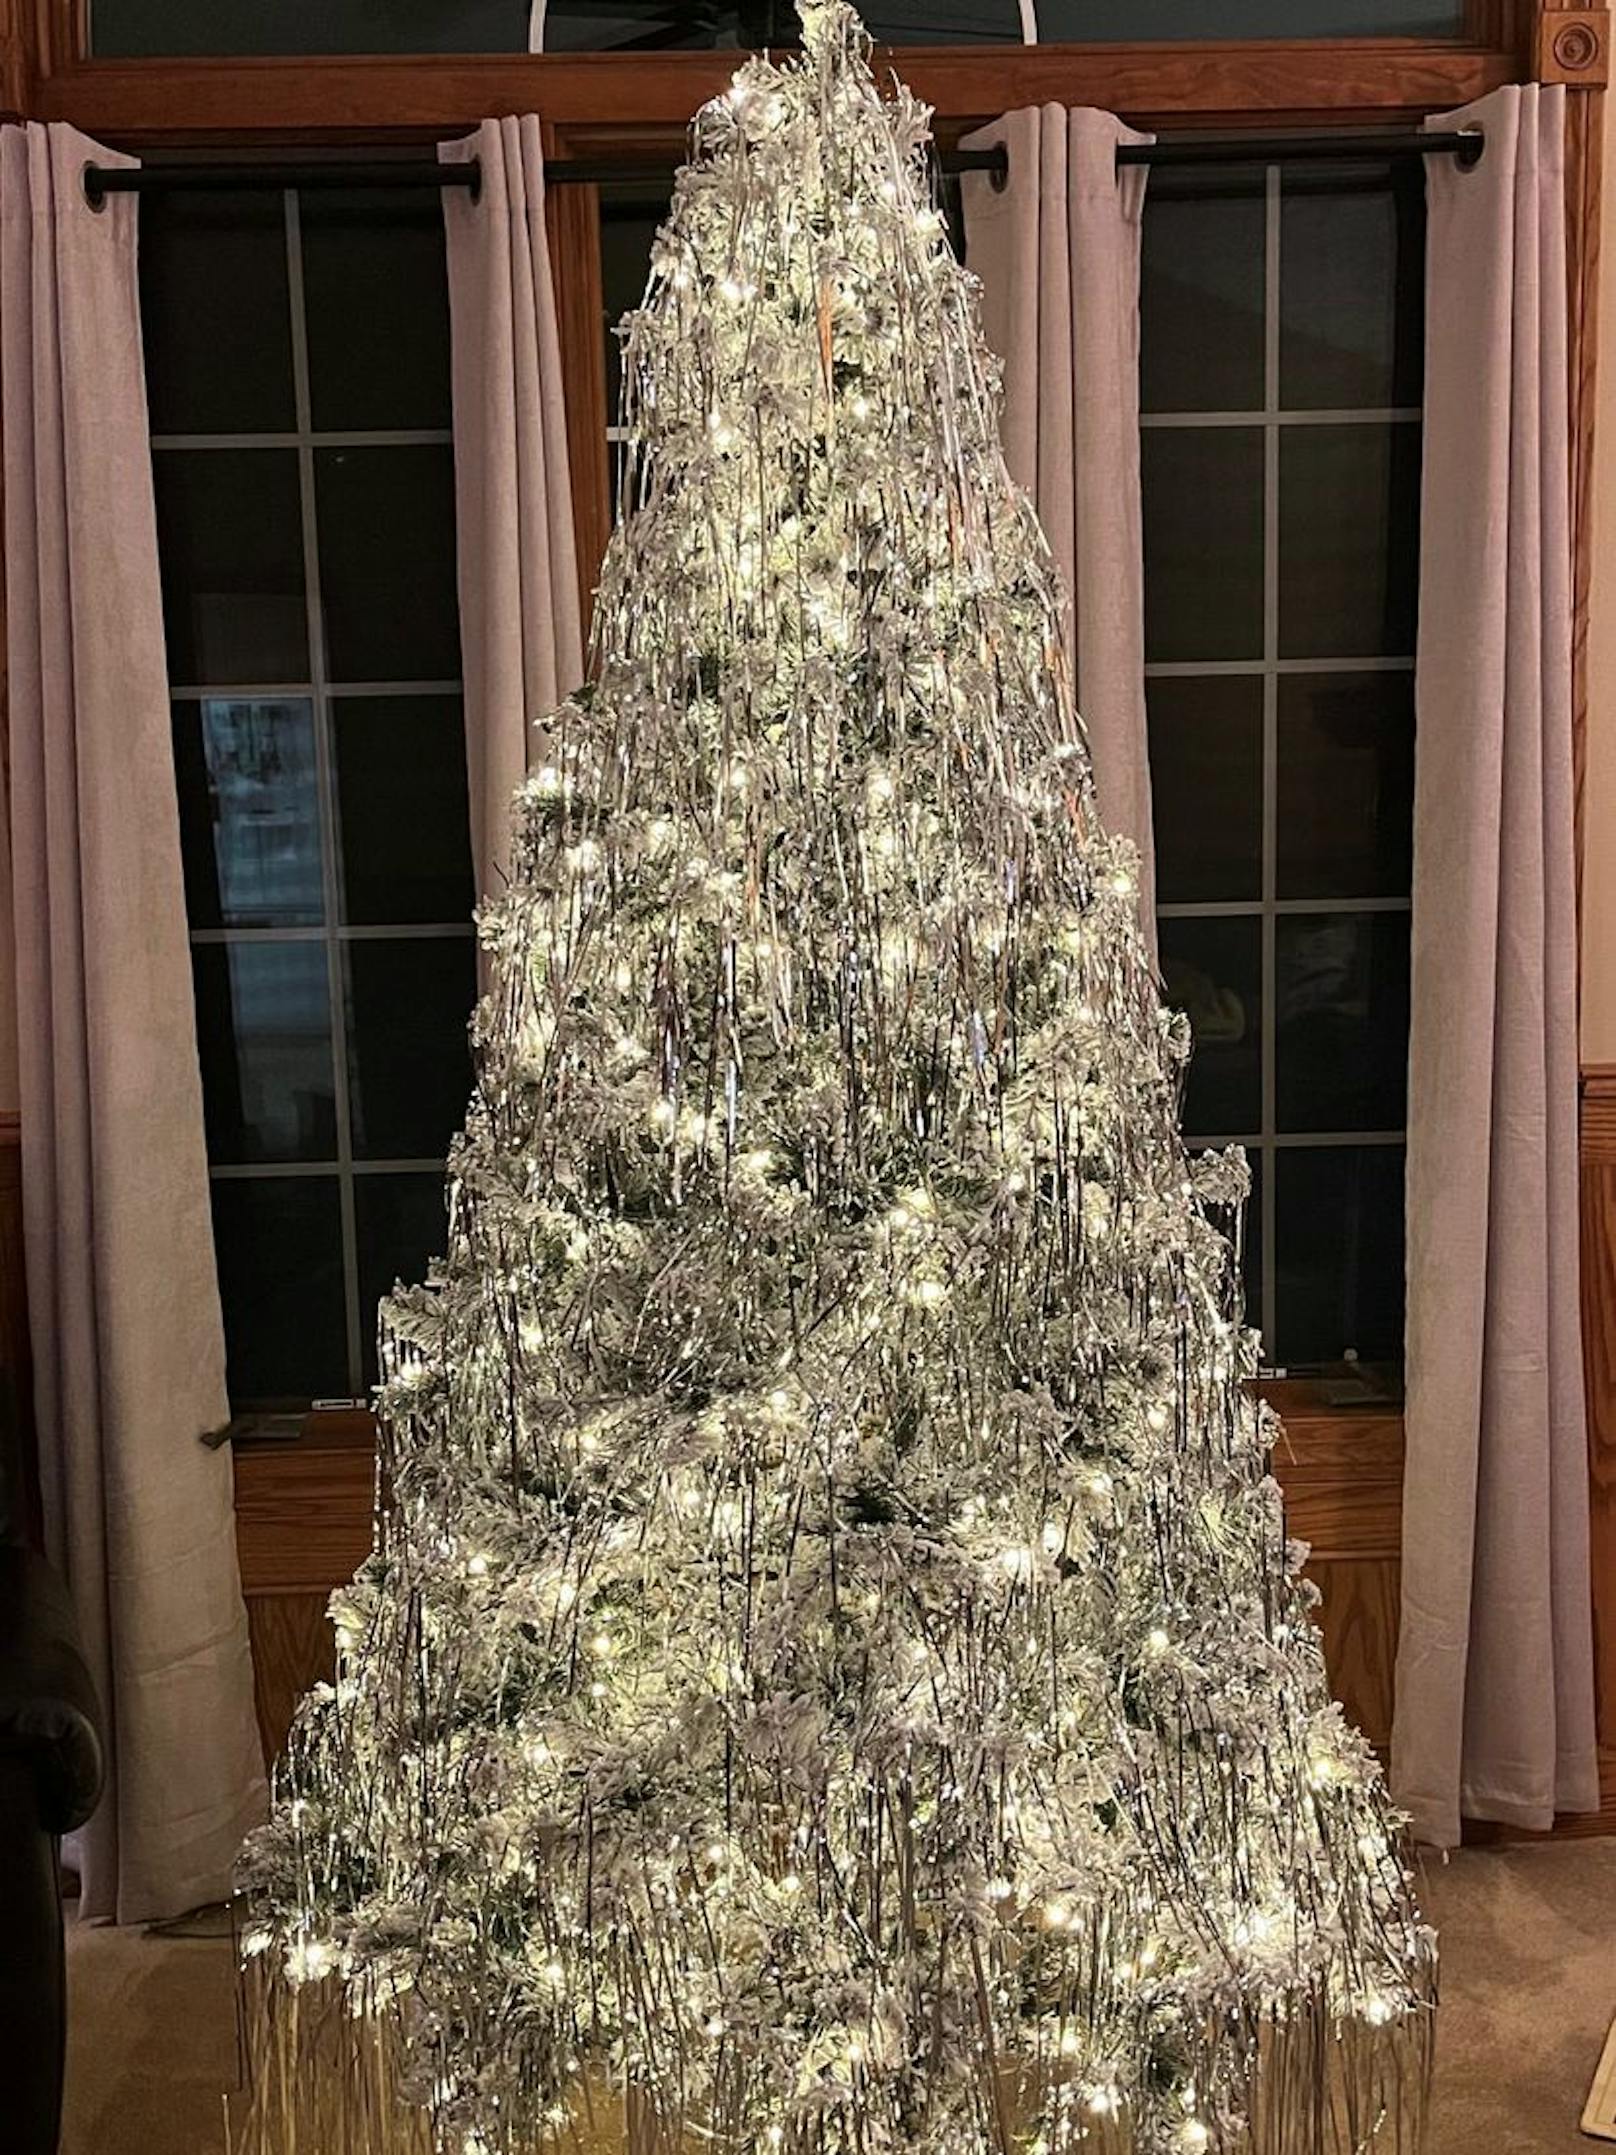 Kelly Osbournes Weihnachtsbaum glitzert in strahlendem Silber.